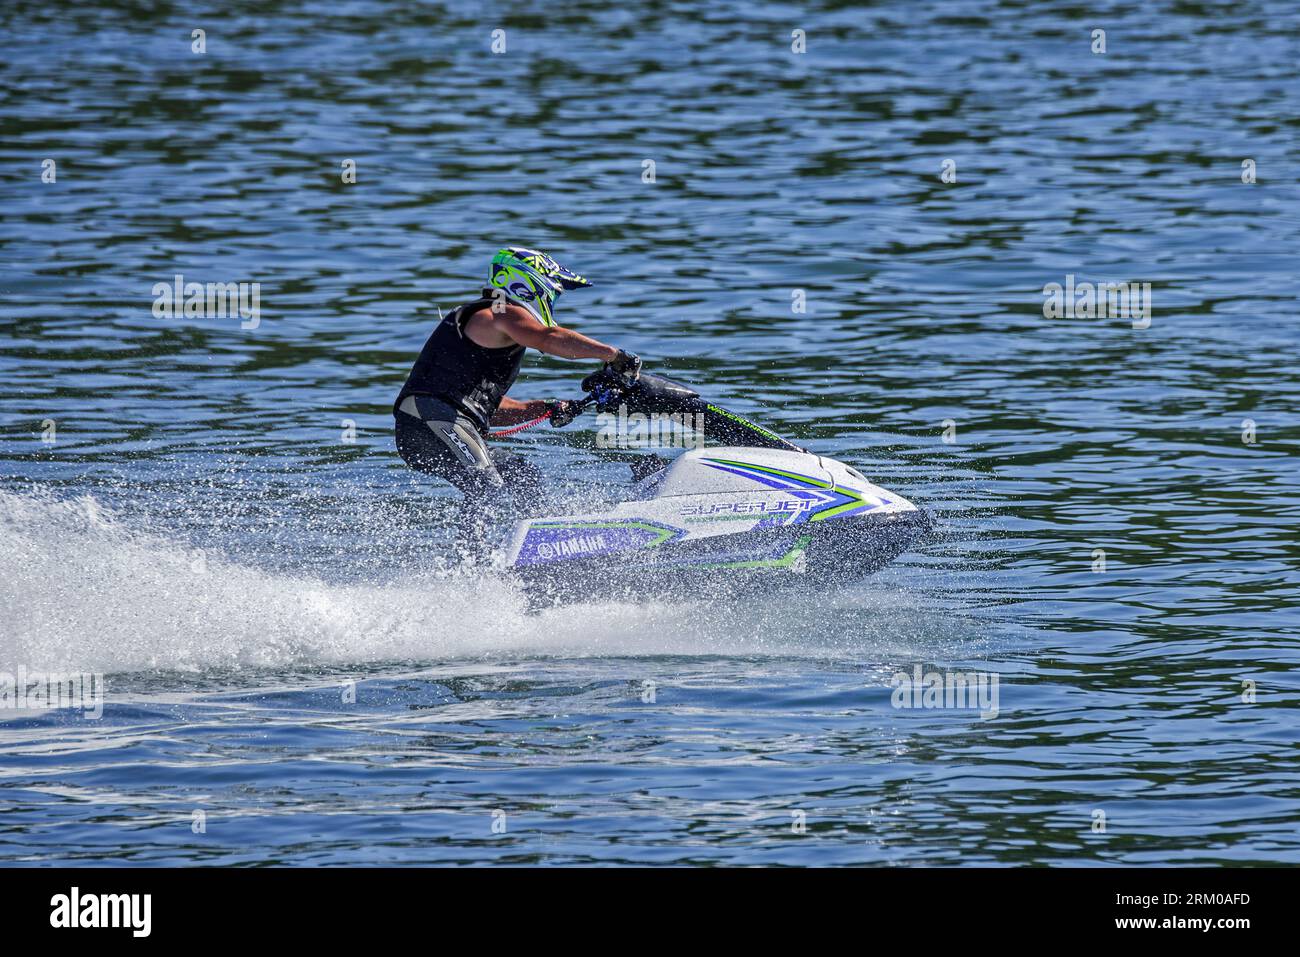 Jet ski / jetski / water scooter / stand-up personal watercraft / PWC rider racing on lake Stock Photo